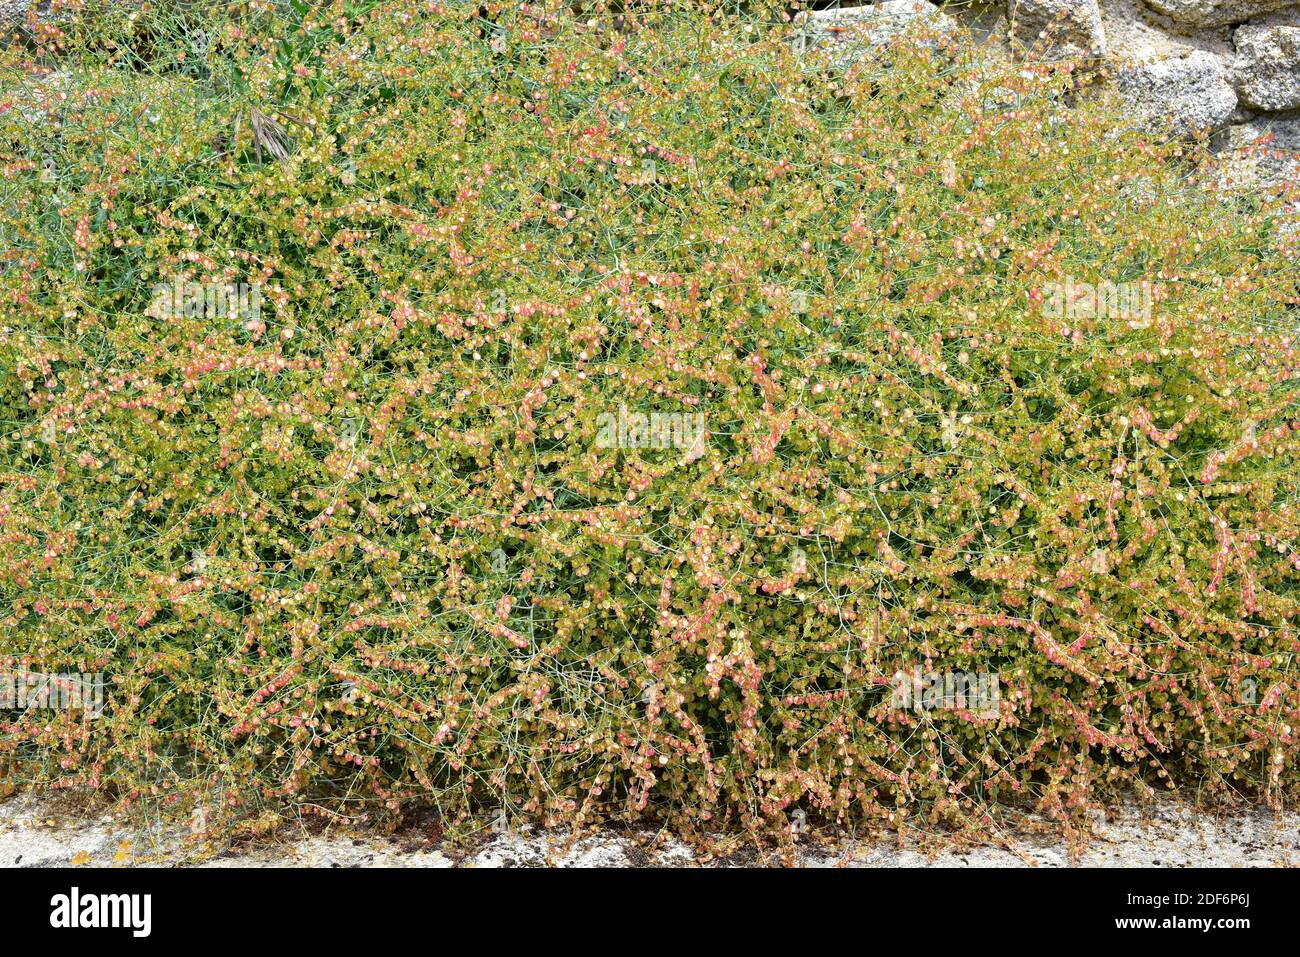 La acedera redonda (Rumex scutatus induratus) es un endemismo del Magreb ibérico. Esta foto fue tomada en el Parque Natural Arribes del Duero, provincia de Zamora, Foto de stock